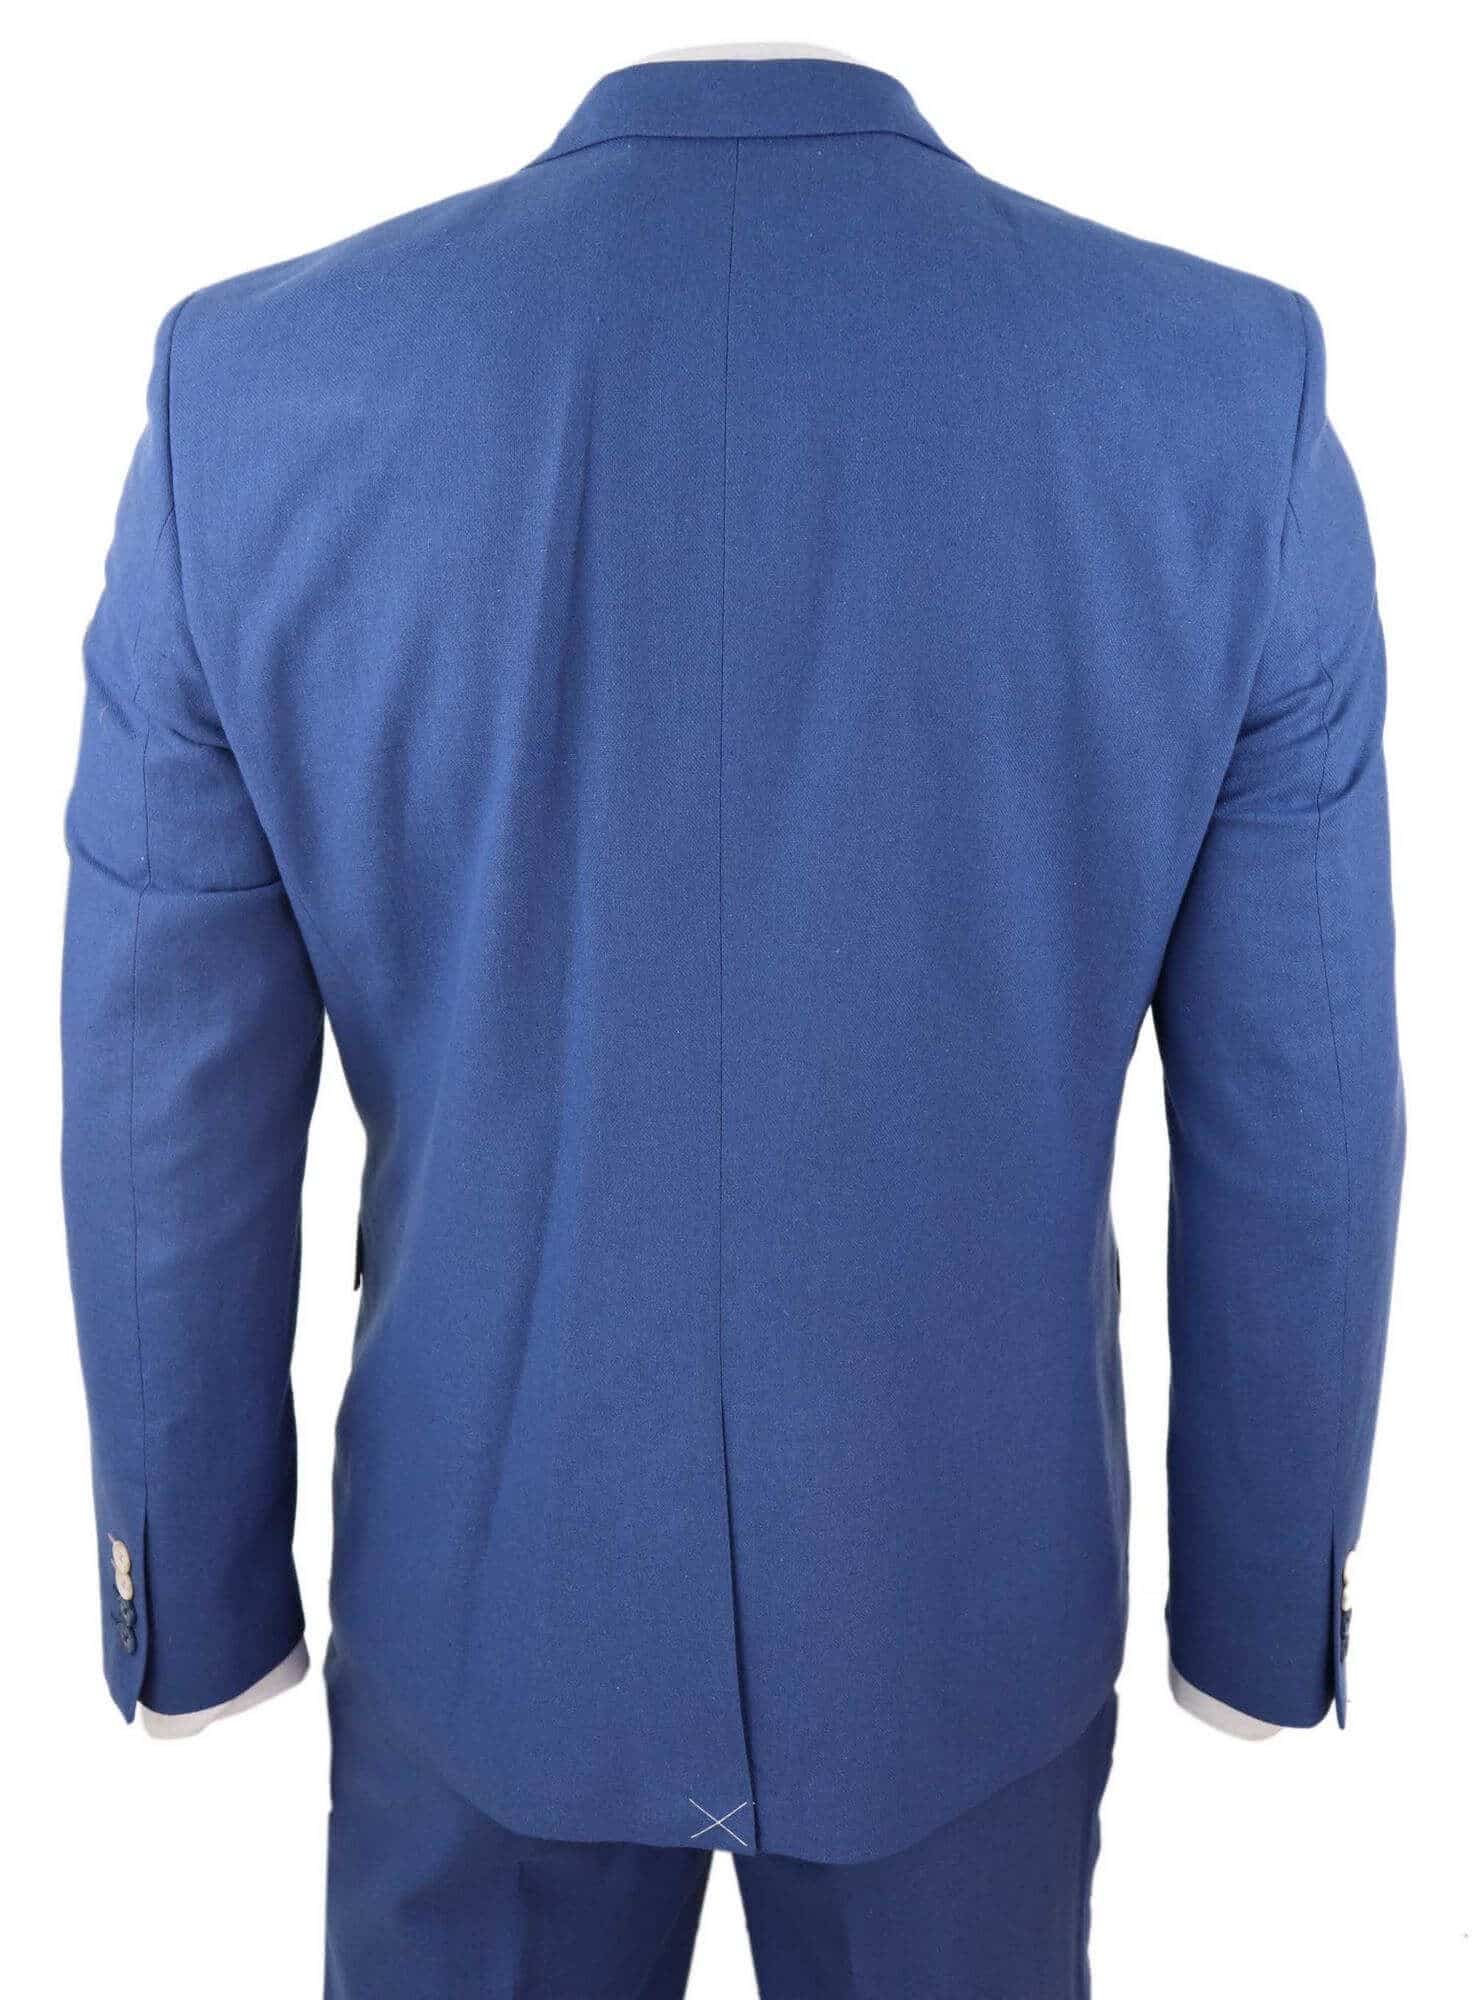 Mens Blue Light Summer Suit: Buy Online - Happy Gentleman